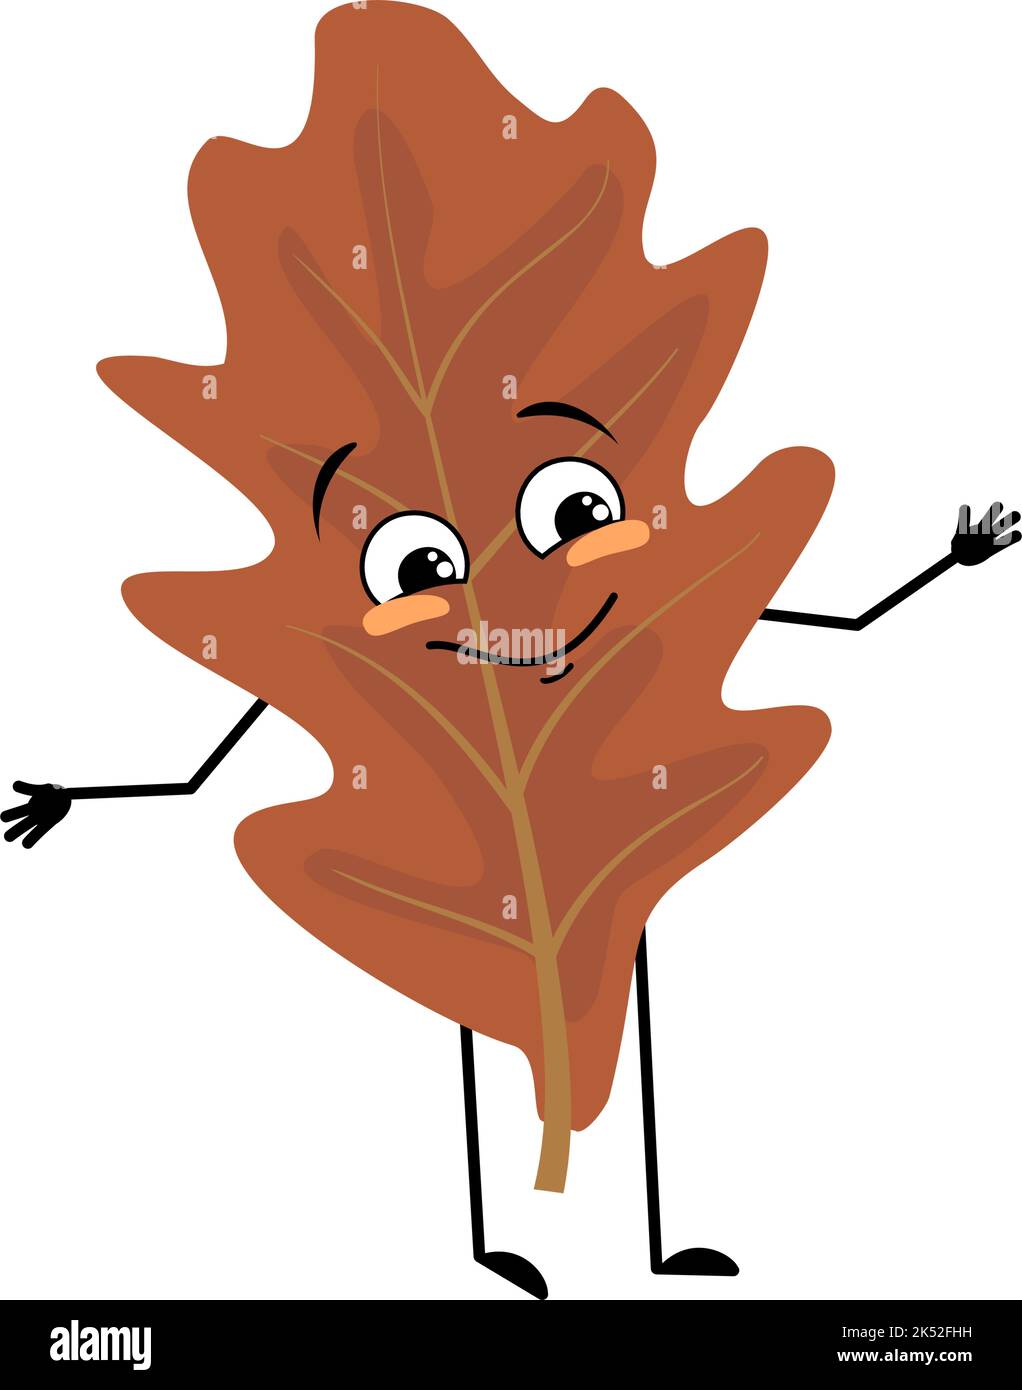 Eichenblatt-Charakter mit fröhlichen Emotionen, Lächeln im Gesicht, glücklichen Augen, Armen und Beinen. Fröhliche Waldpflanze in herbstbrauner Farbe. Vektorgrafik flach Stock Vektor